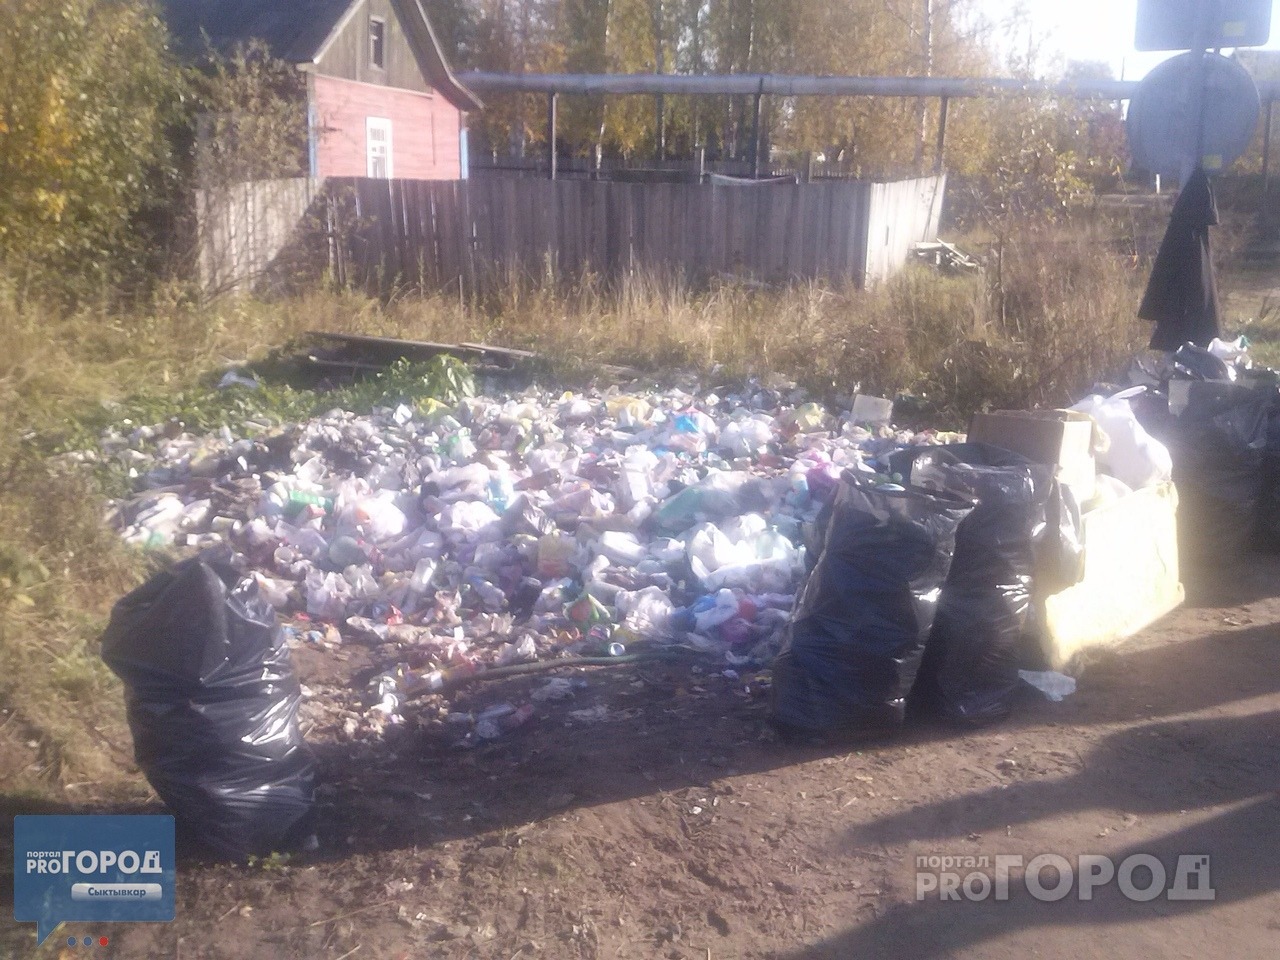 В Сыктывкаре целый поселок утопает в мусоре по вине управляющей компании (фото)